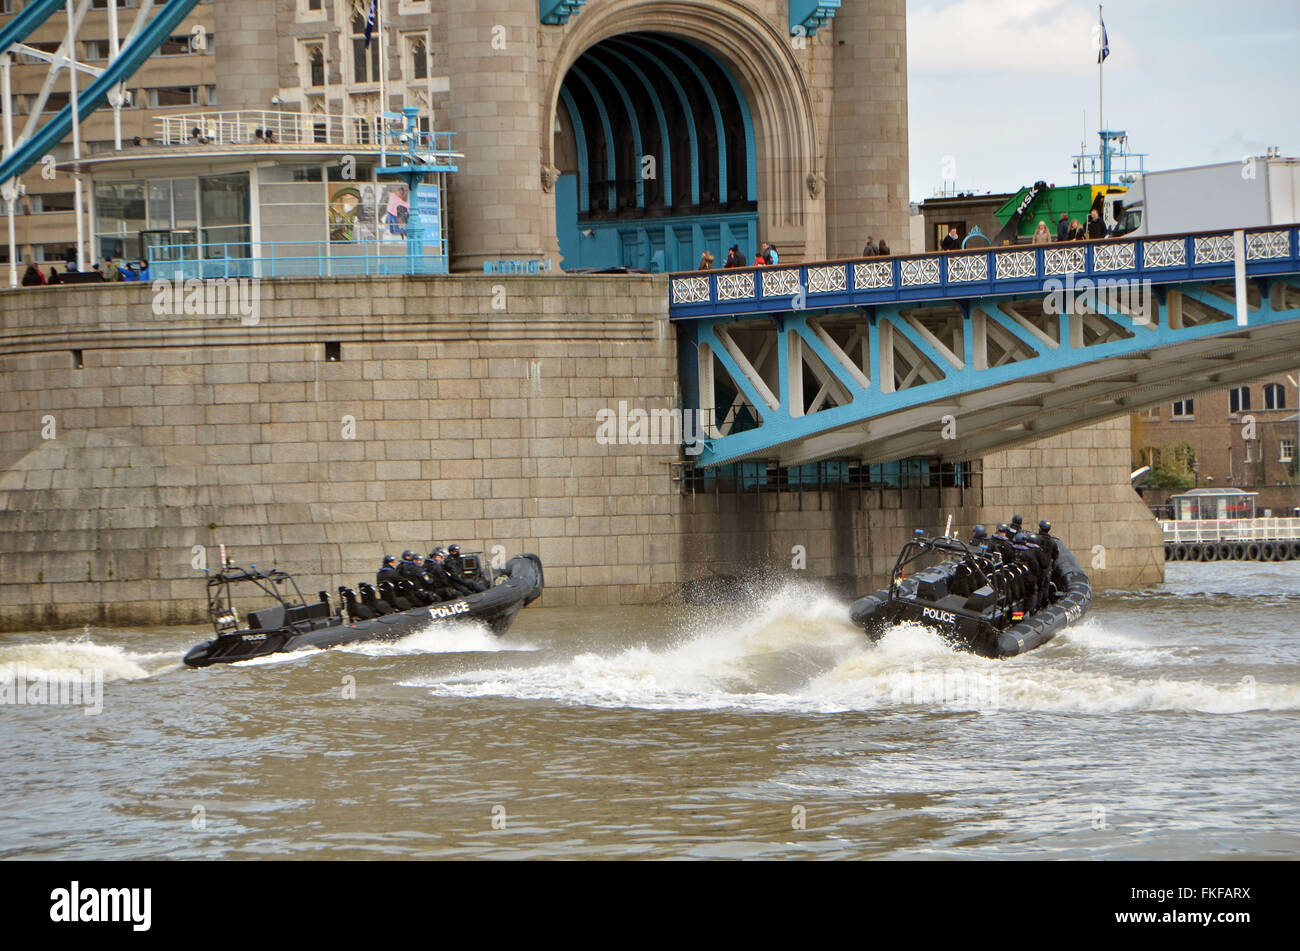 London, UK, 8. März 2016, Metropolitan Police high-Speed Jet-Engine starren Inflatable Boat (RIB) unterquert Tower Bridge. Bildnachweis: JOHNNY ARMSTEAD/Alamy Live-Nachrichten Stockfoto